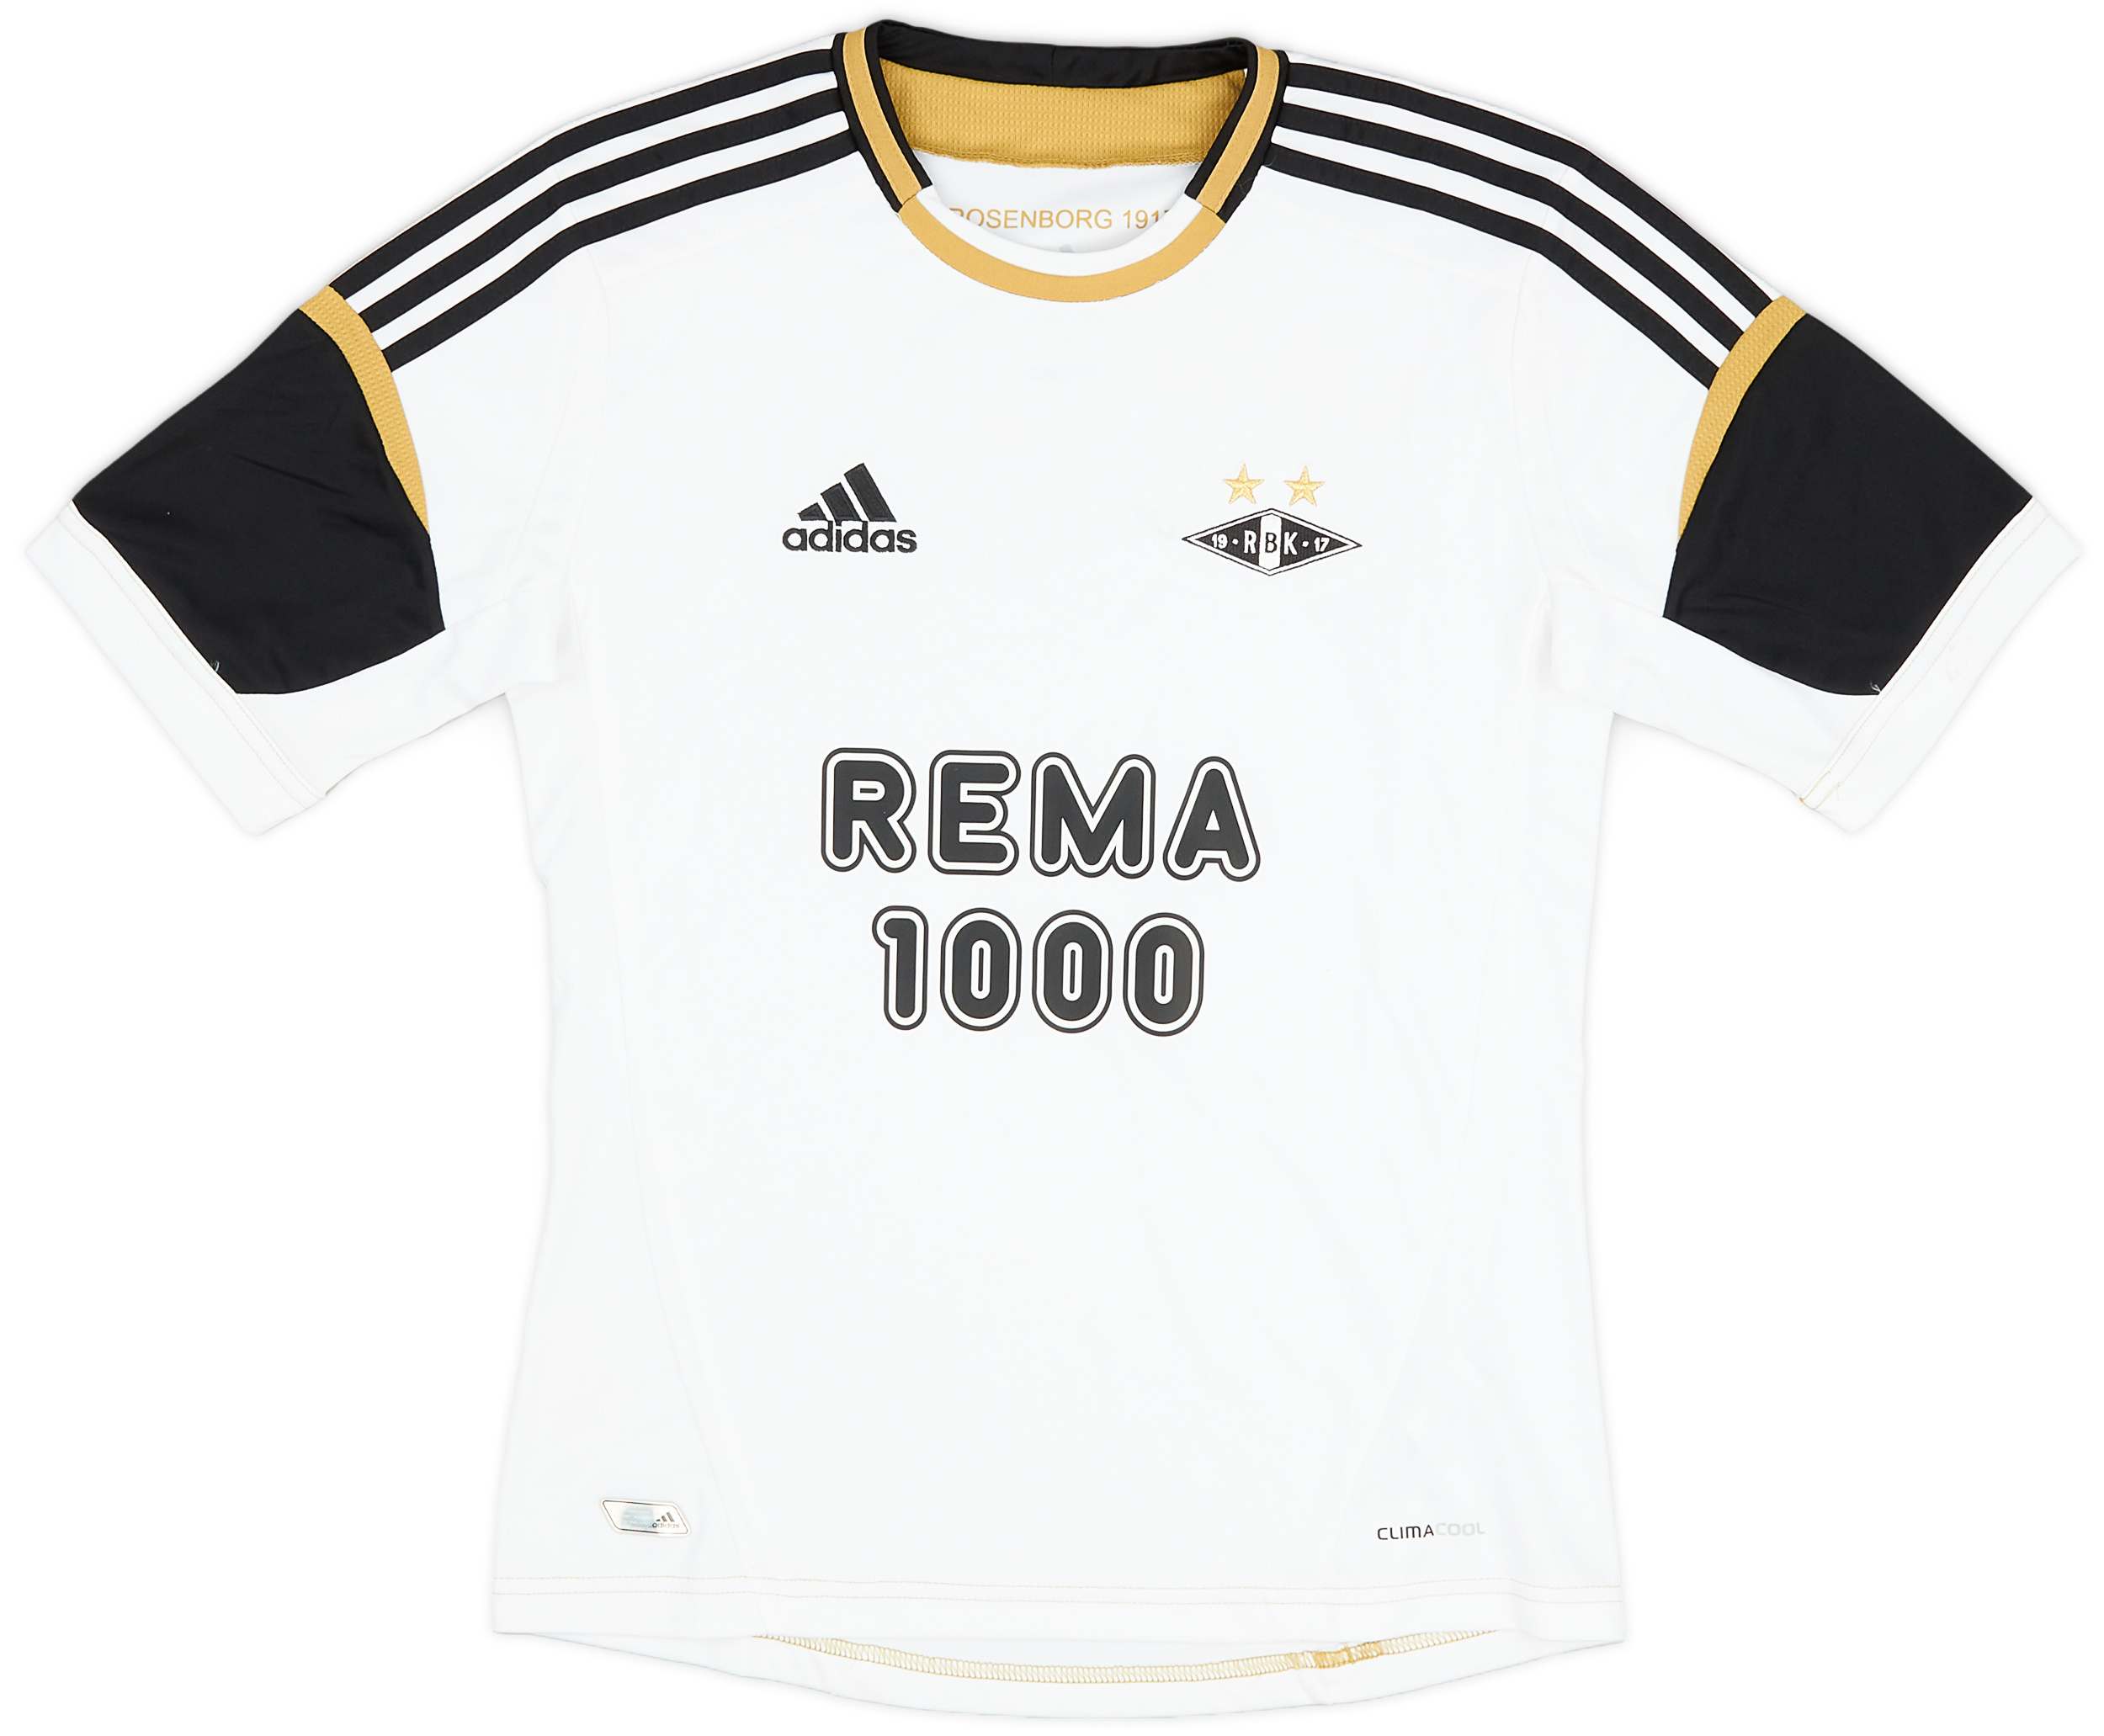 Rosenborg  home baju (Original)